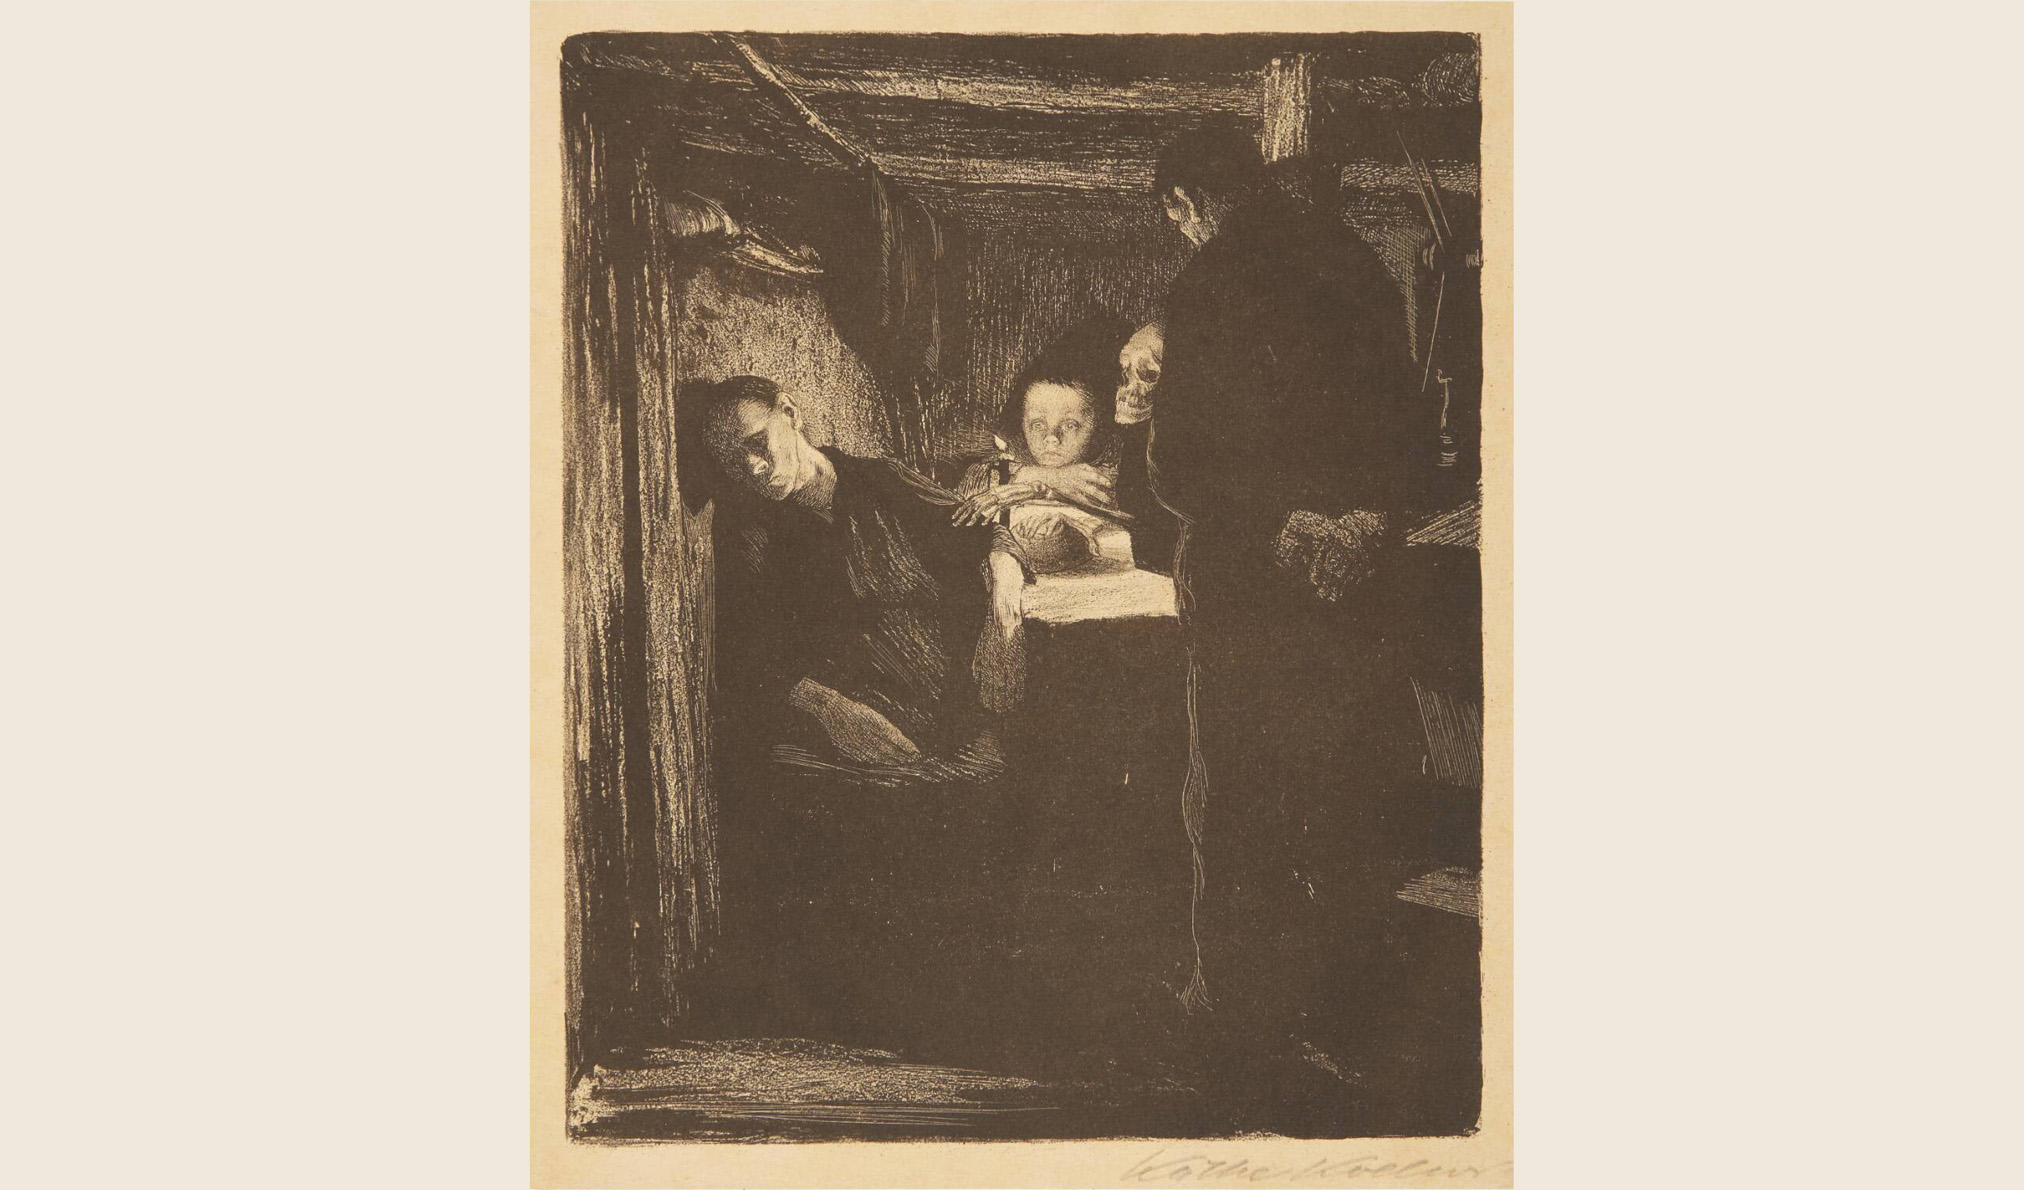 Litografi. I en mörk stuga lutar en utmärglad kvinna sitt huvud mot väggen. Ett likblekt barn, hårt kramad av ett skelett, håller ett ljus i handen. En man står bredvid.